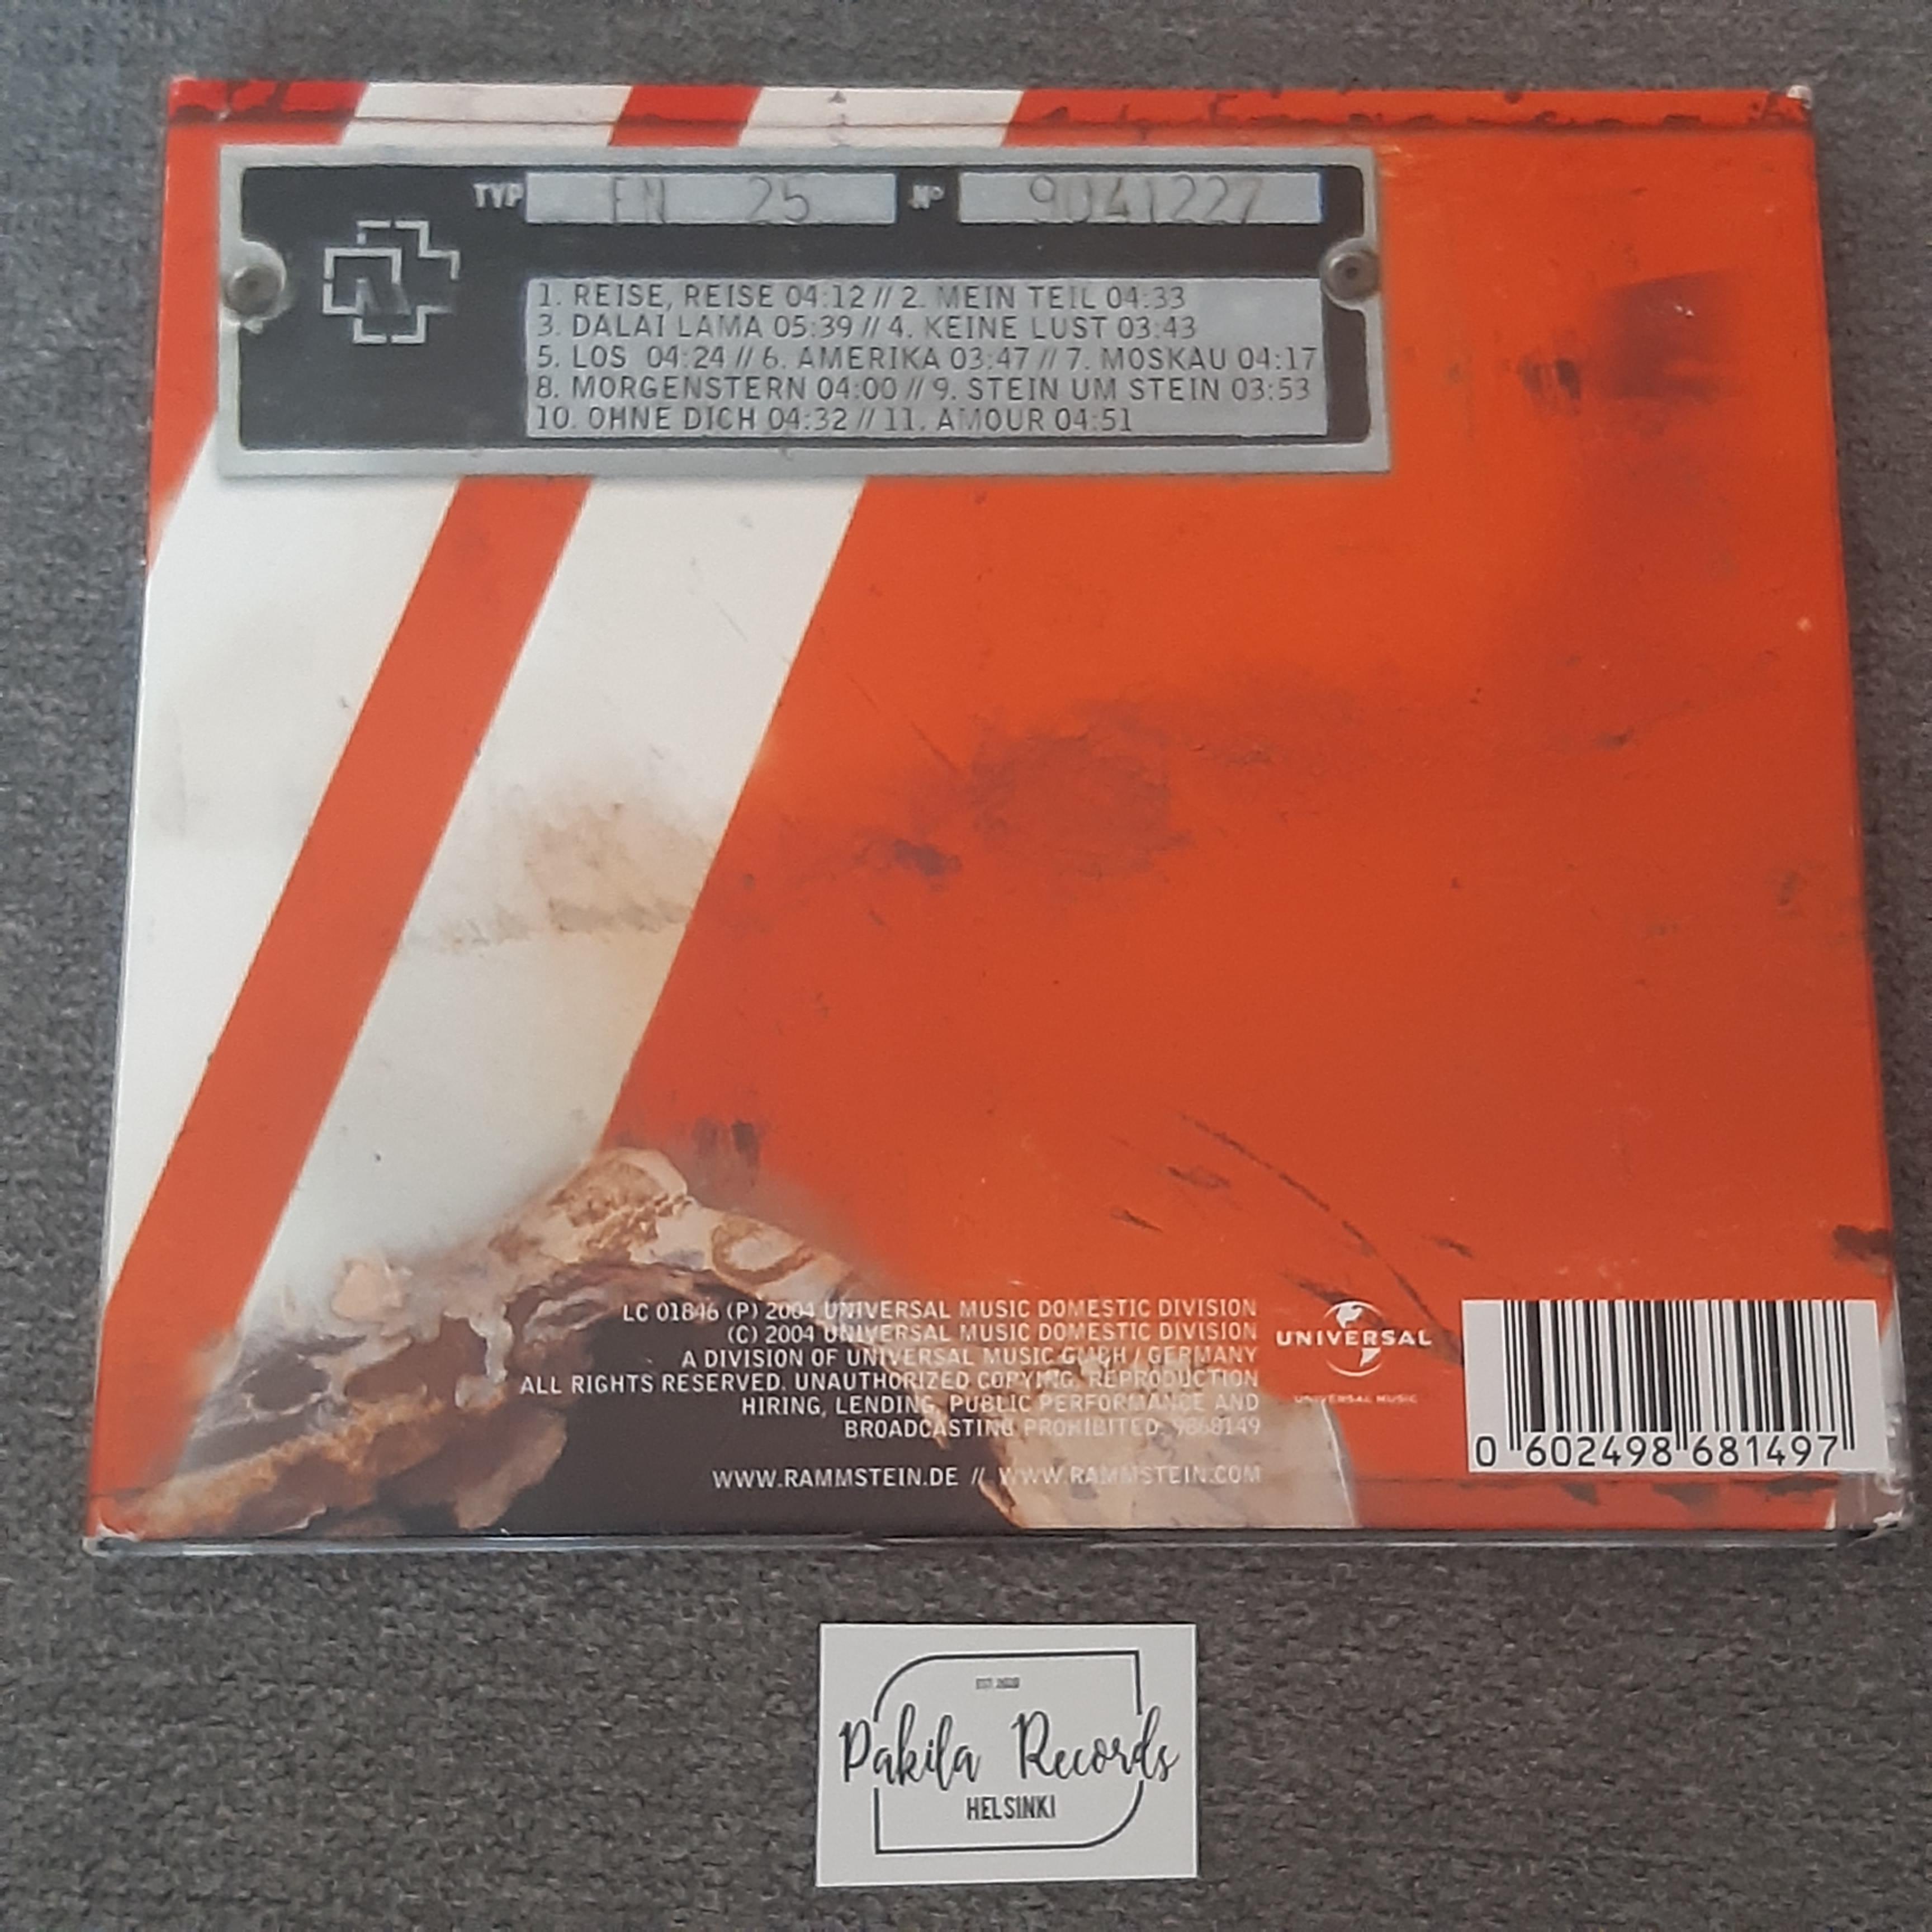 Rammstein - Reise, reise - CD (käytetty)